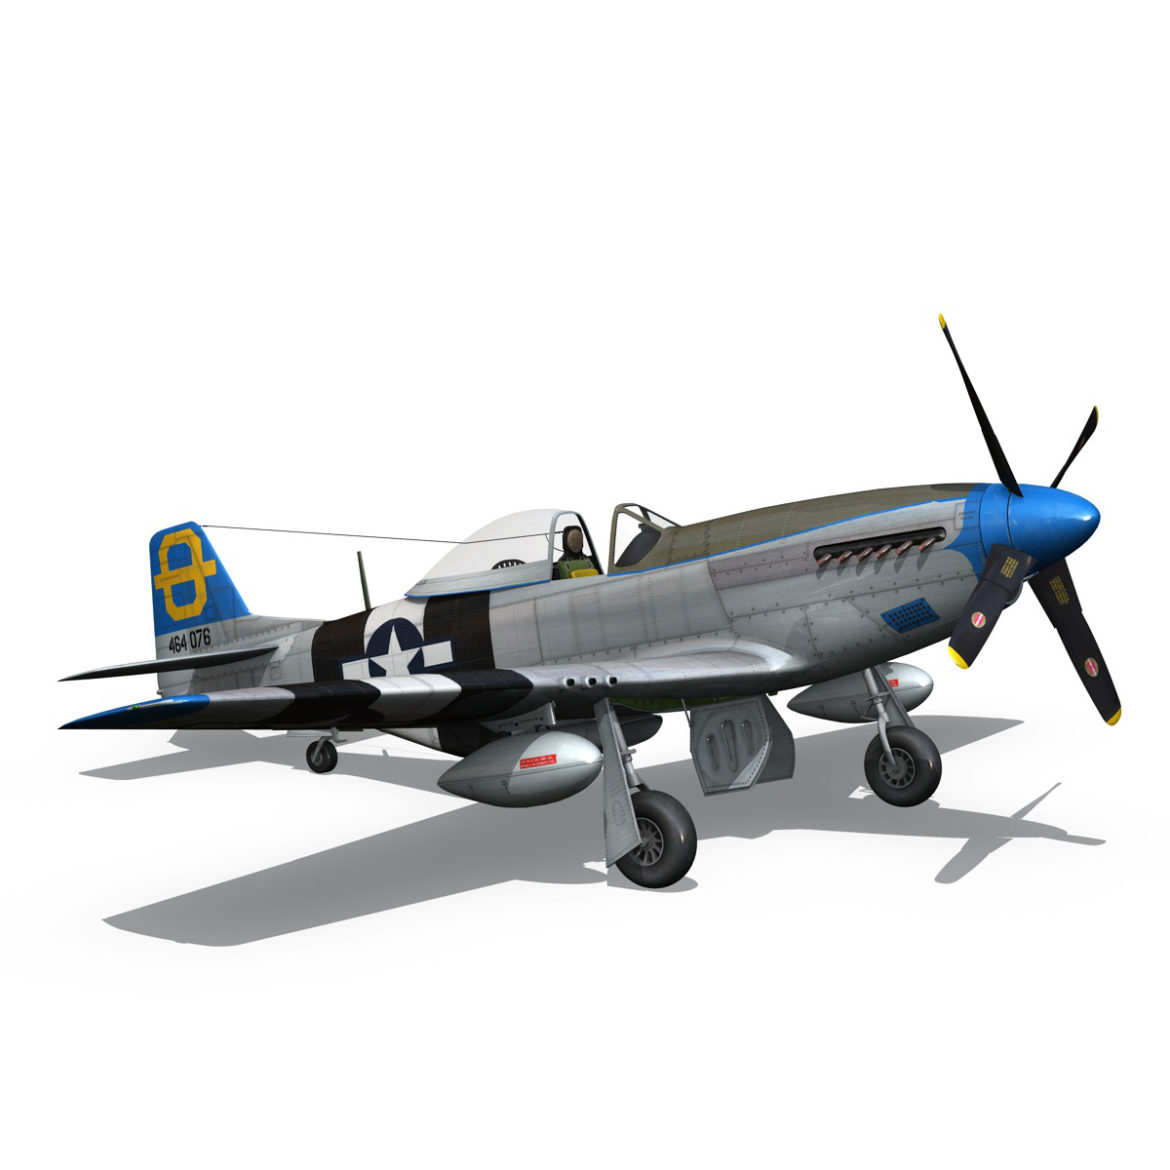 north american p-51d mustang – jumpin jacques 3d model fbx c4d lwo obj 294335